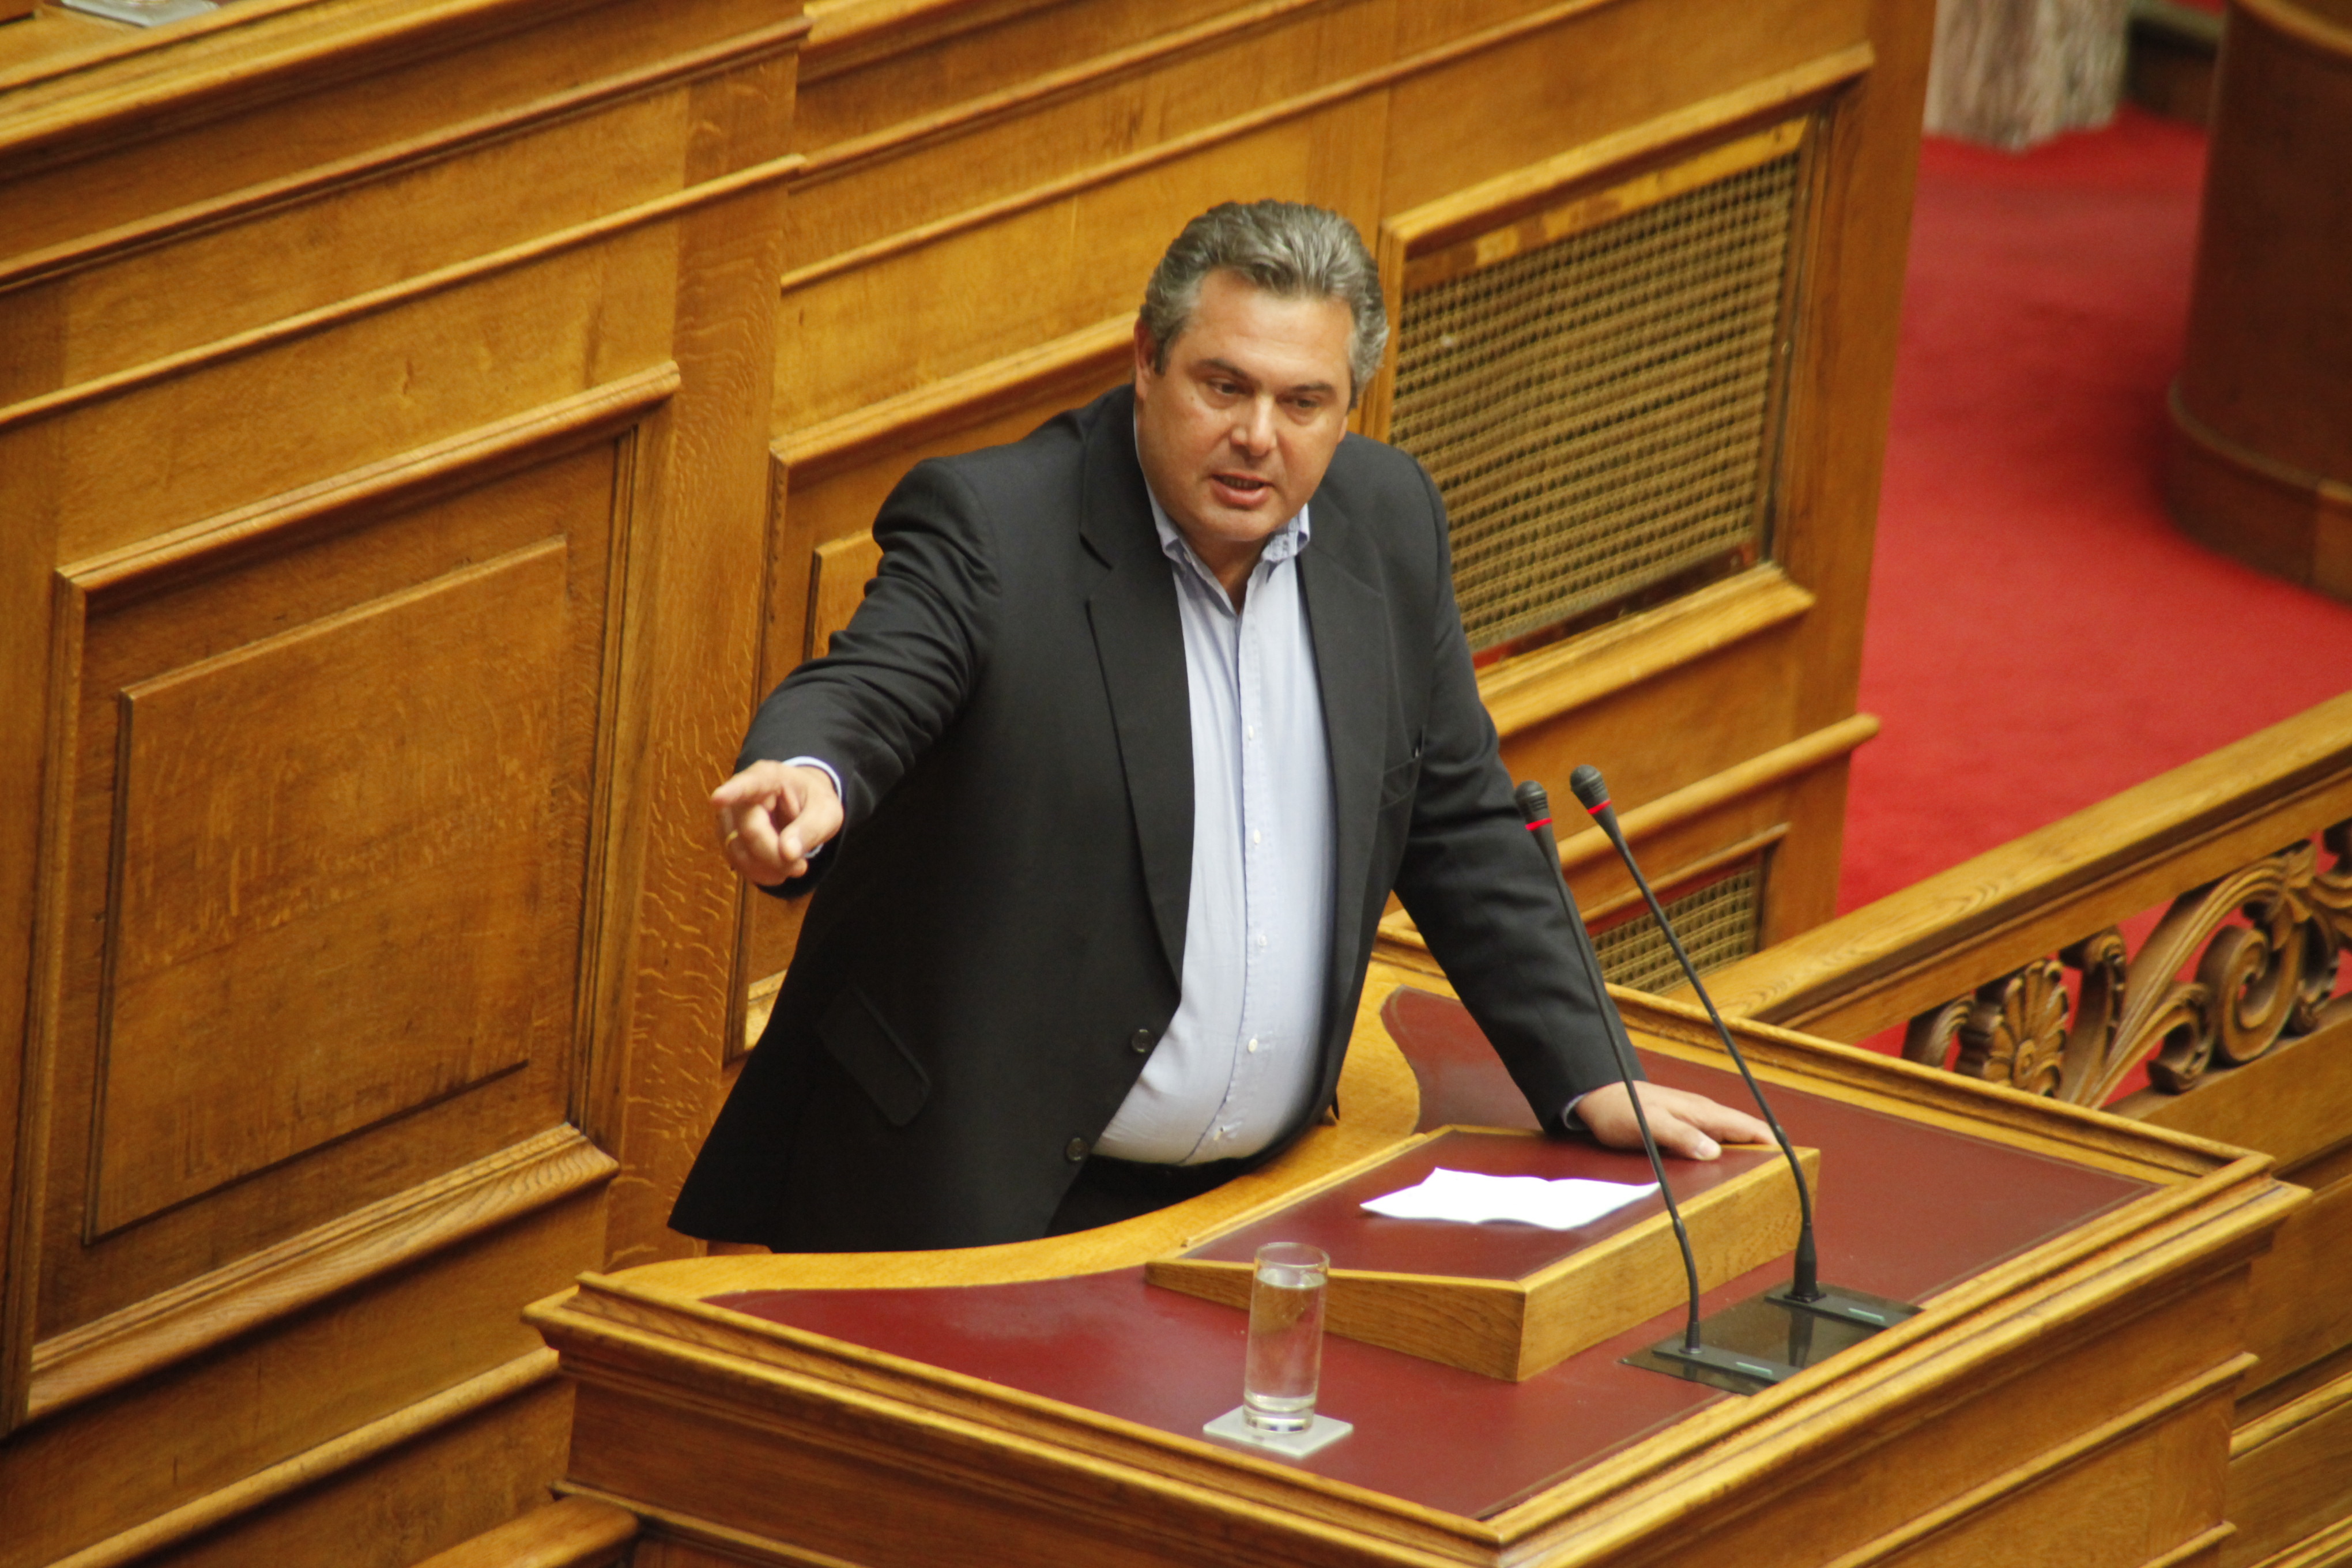 Π.Καμμένος: Να απαντήσει ο πρωθυπουργός εάν έχει παραχωρήσει τον όρο “¨Μακεδονία”